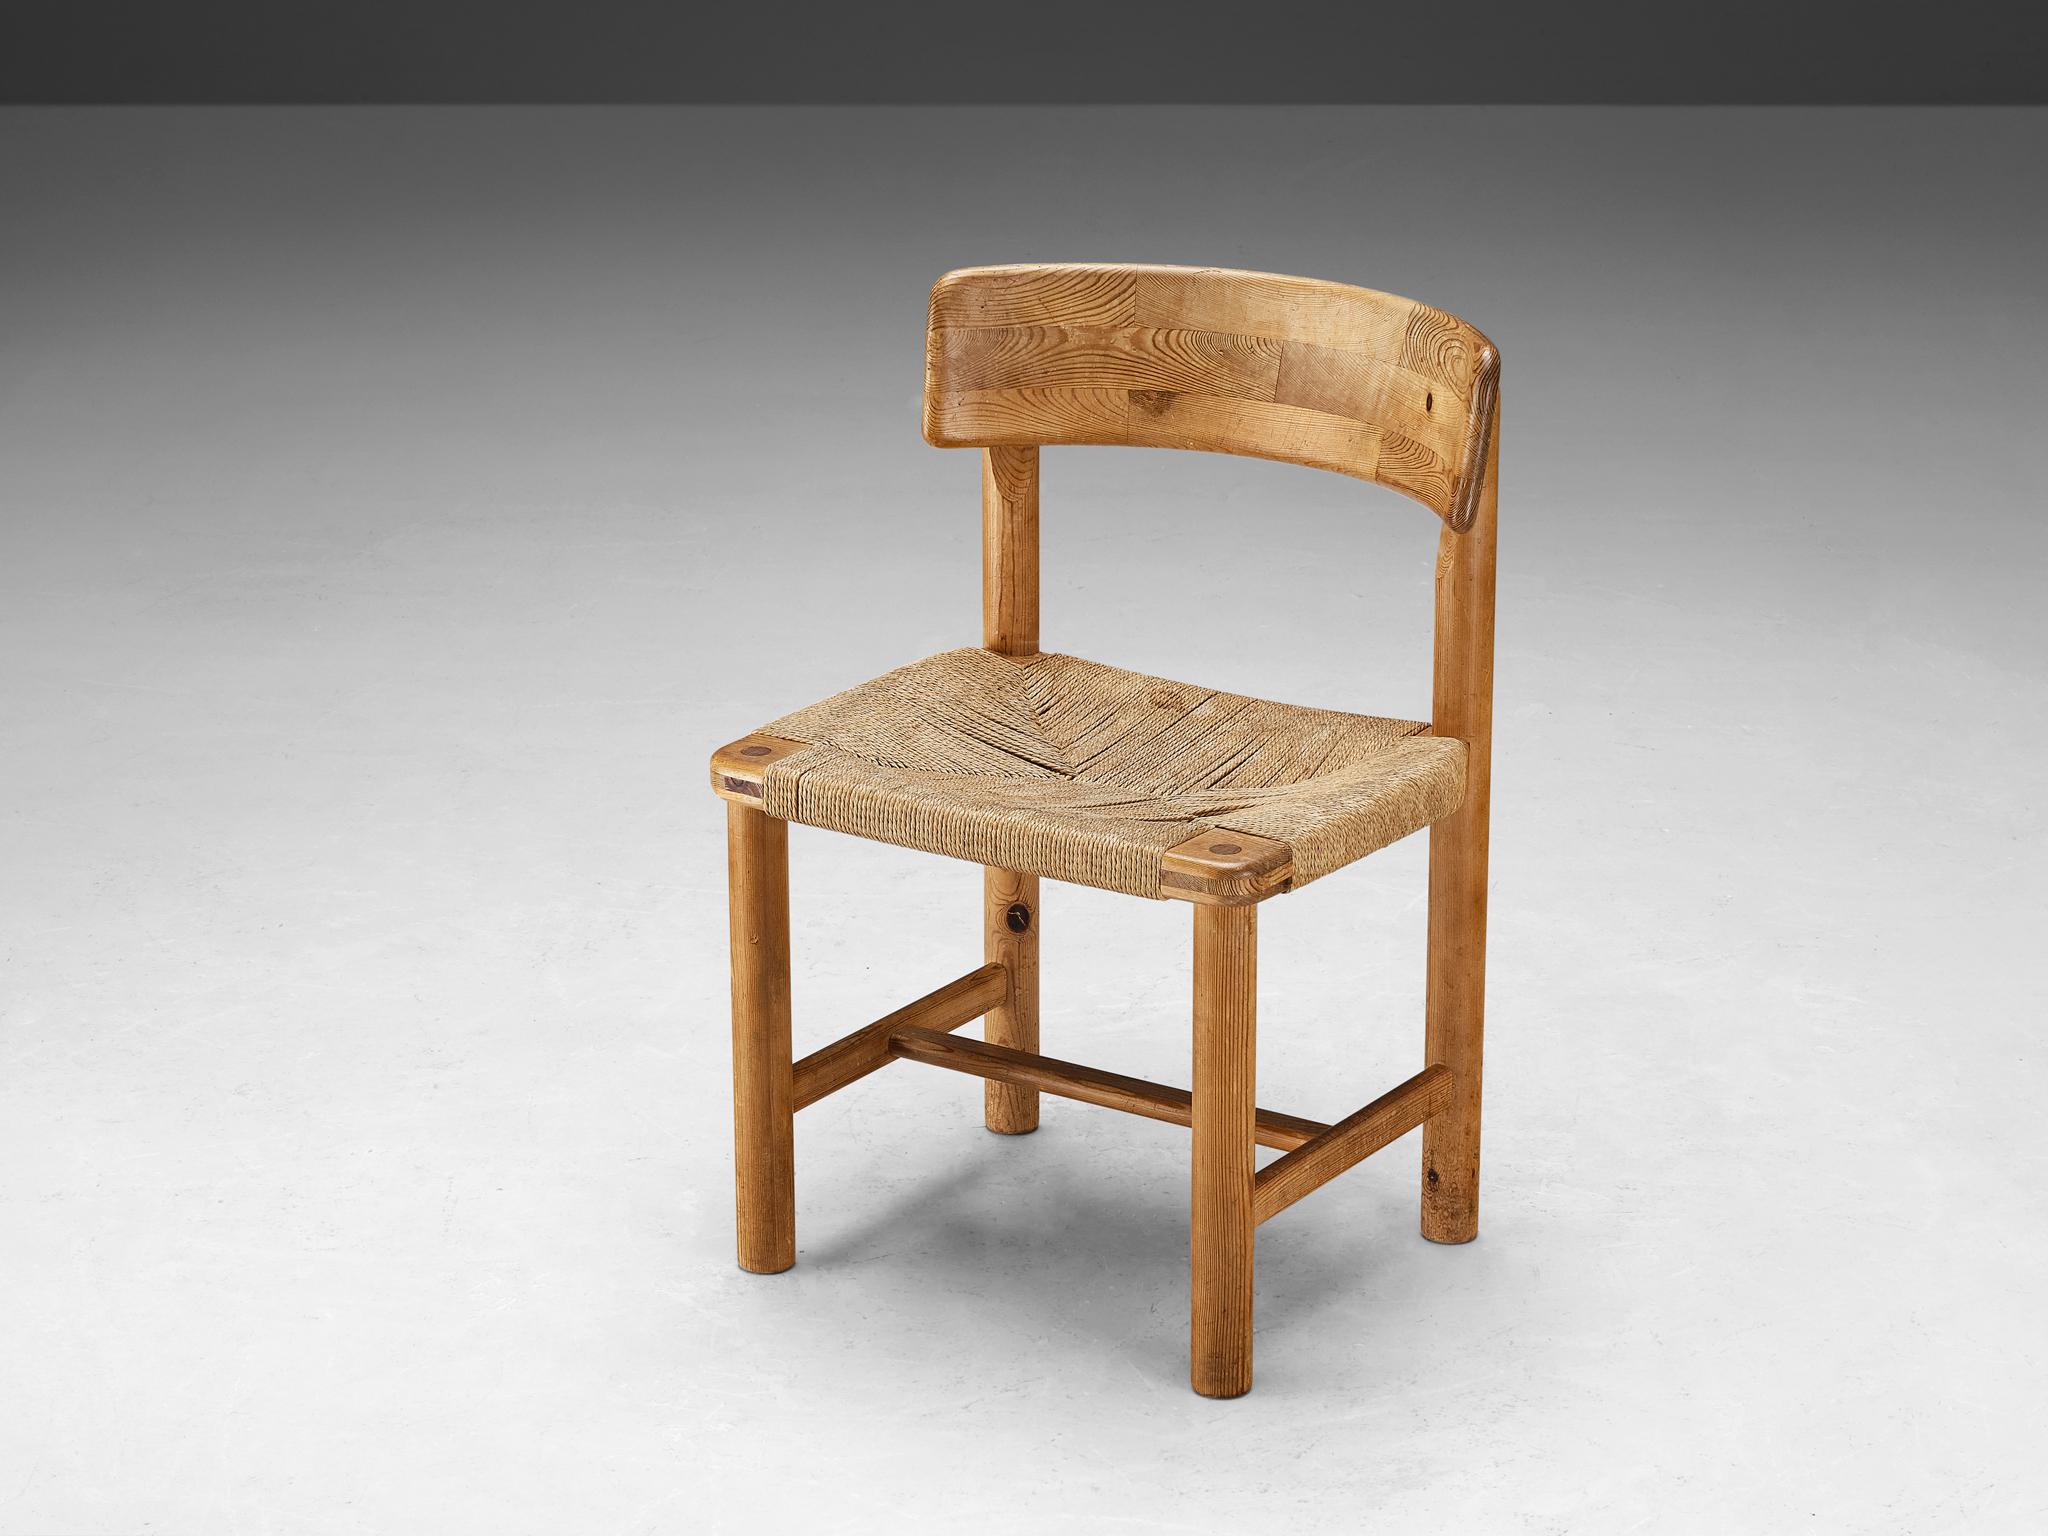 Rainer Daumiller, pin, corde de papier, Danemark, années 1970

Belle chaise de salle à manger organique et naturelle en pin massif. Un design simpliste avec des bords arrondis et une attention pour l'expression naturelle et le grain du bois.